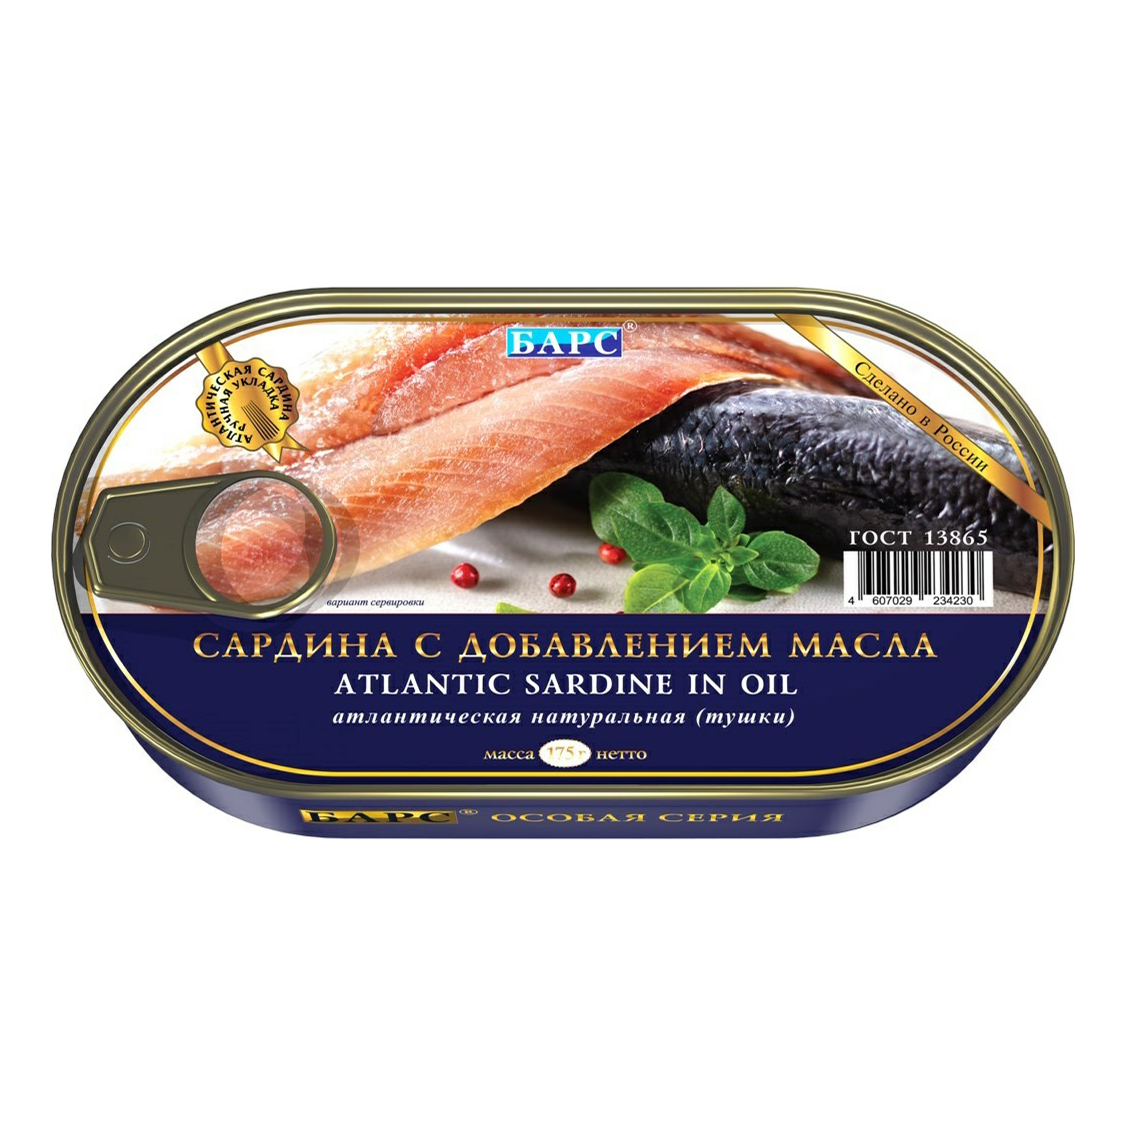 Сардина с добавлением масла Барс атлантическая тушки, ГОСТ, 1 шт по 175г